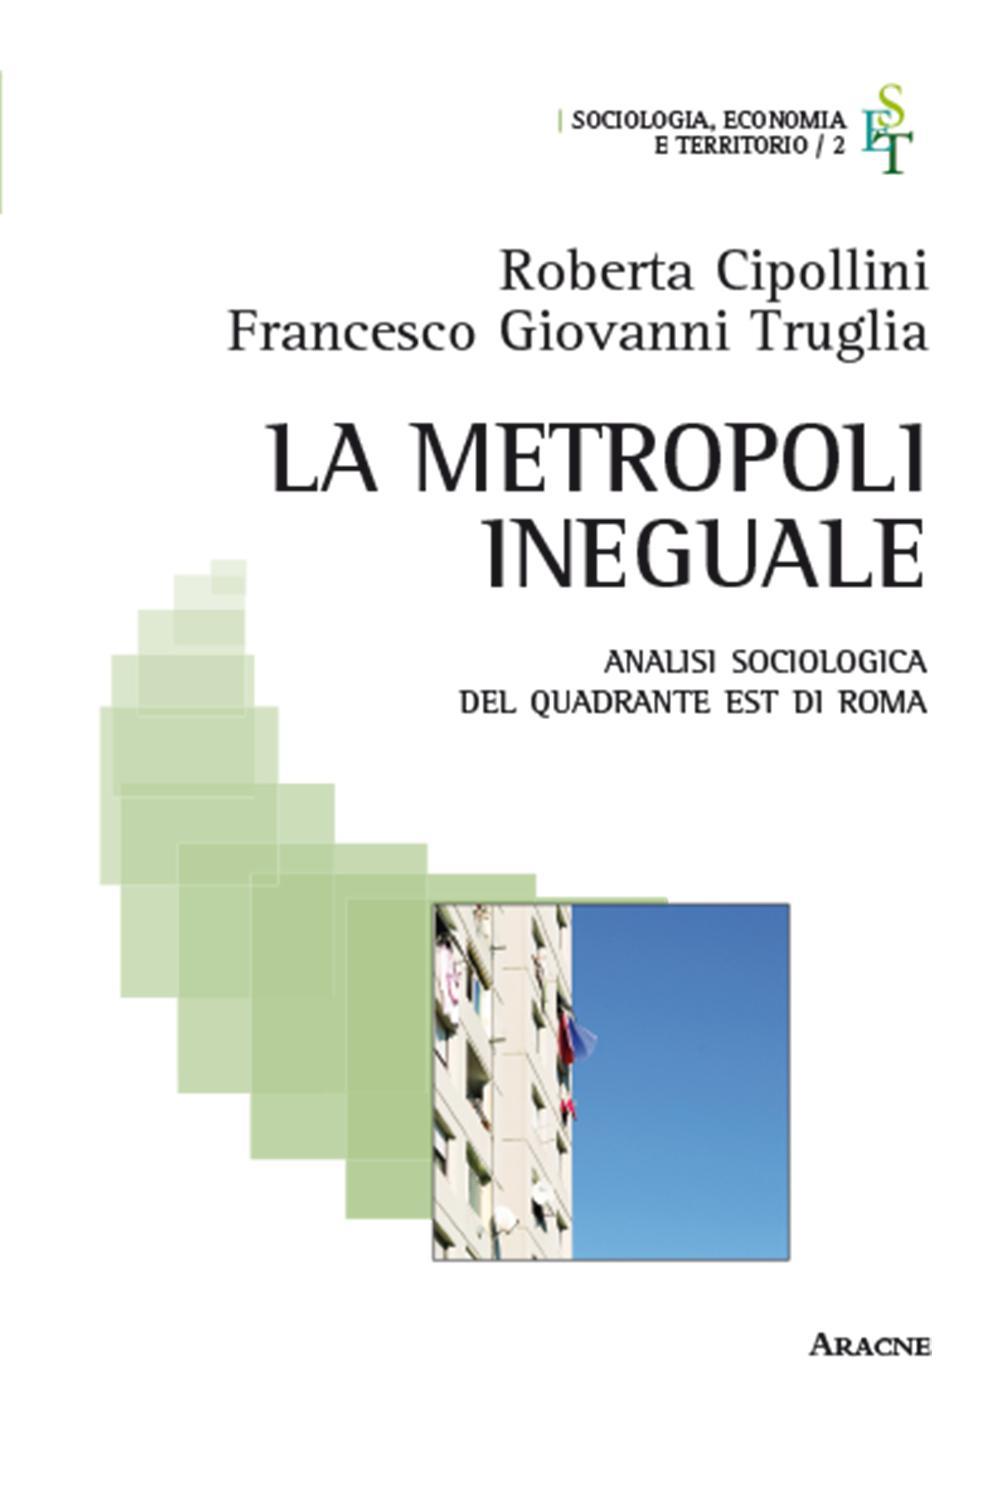 La metropoli ineguale. Analisi sociologica del quadrante Est di Roma